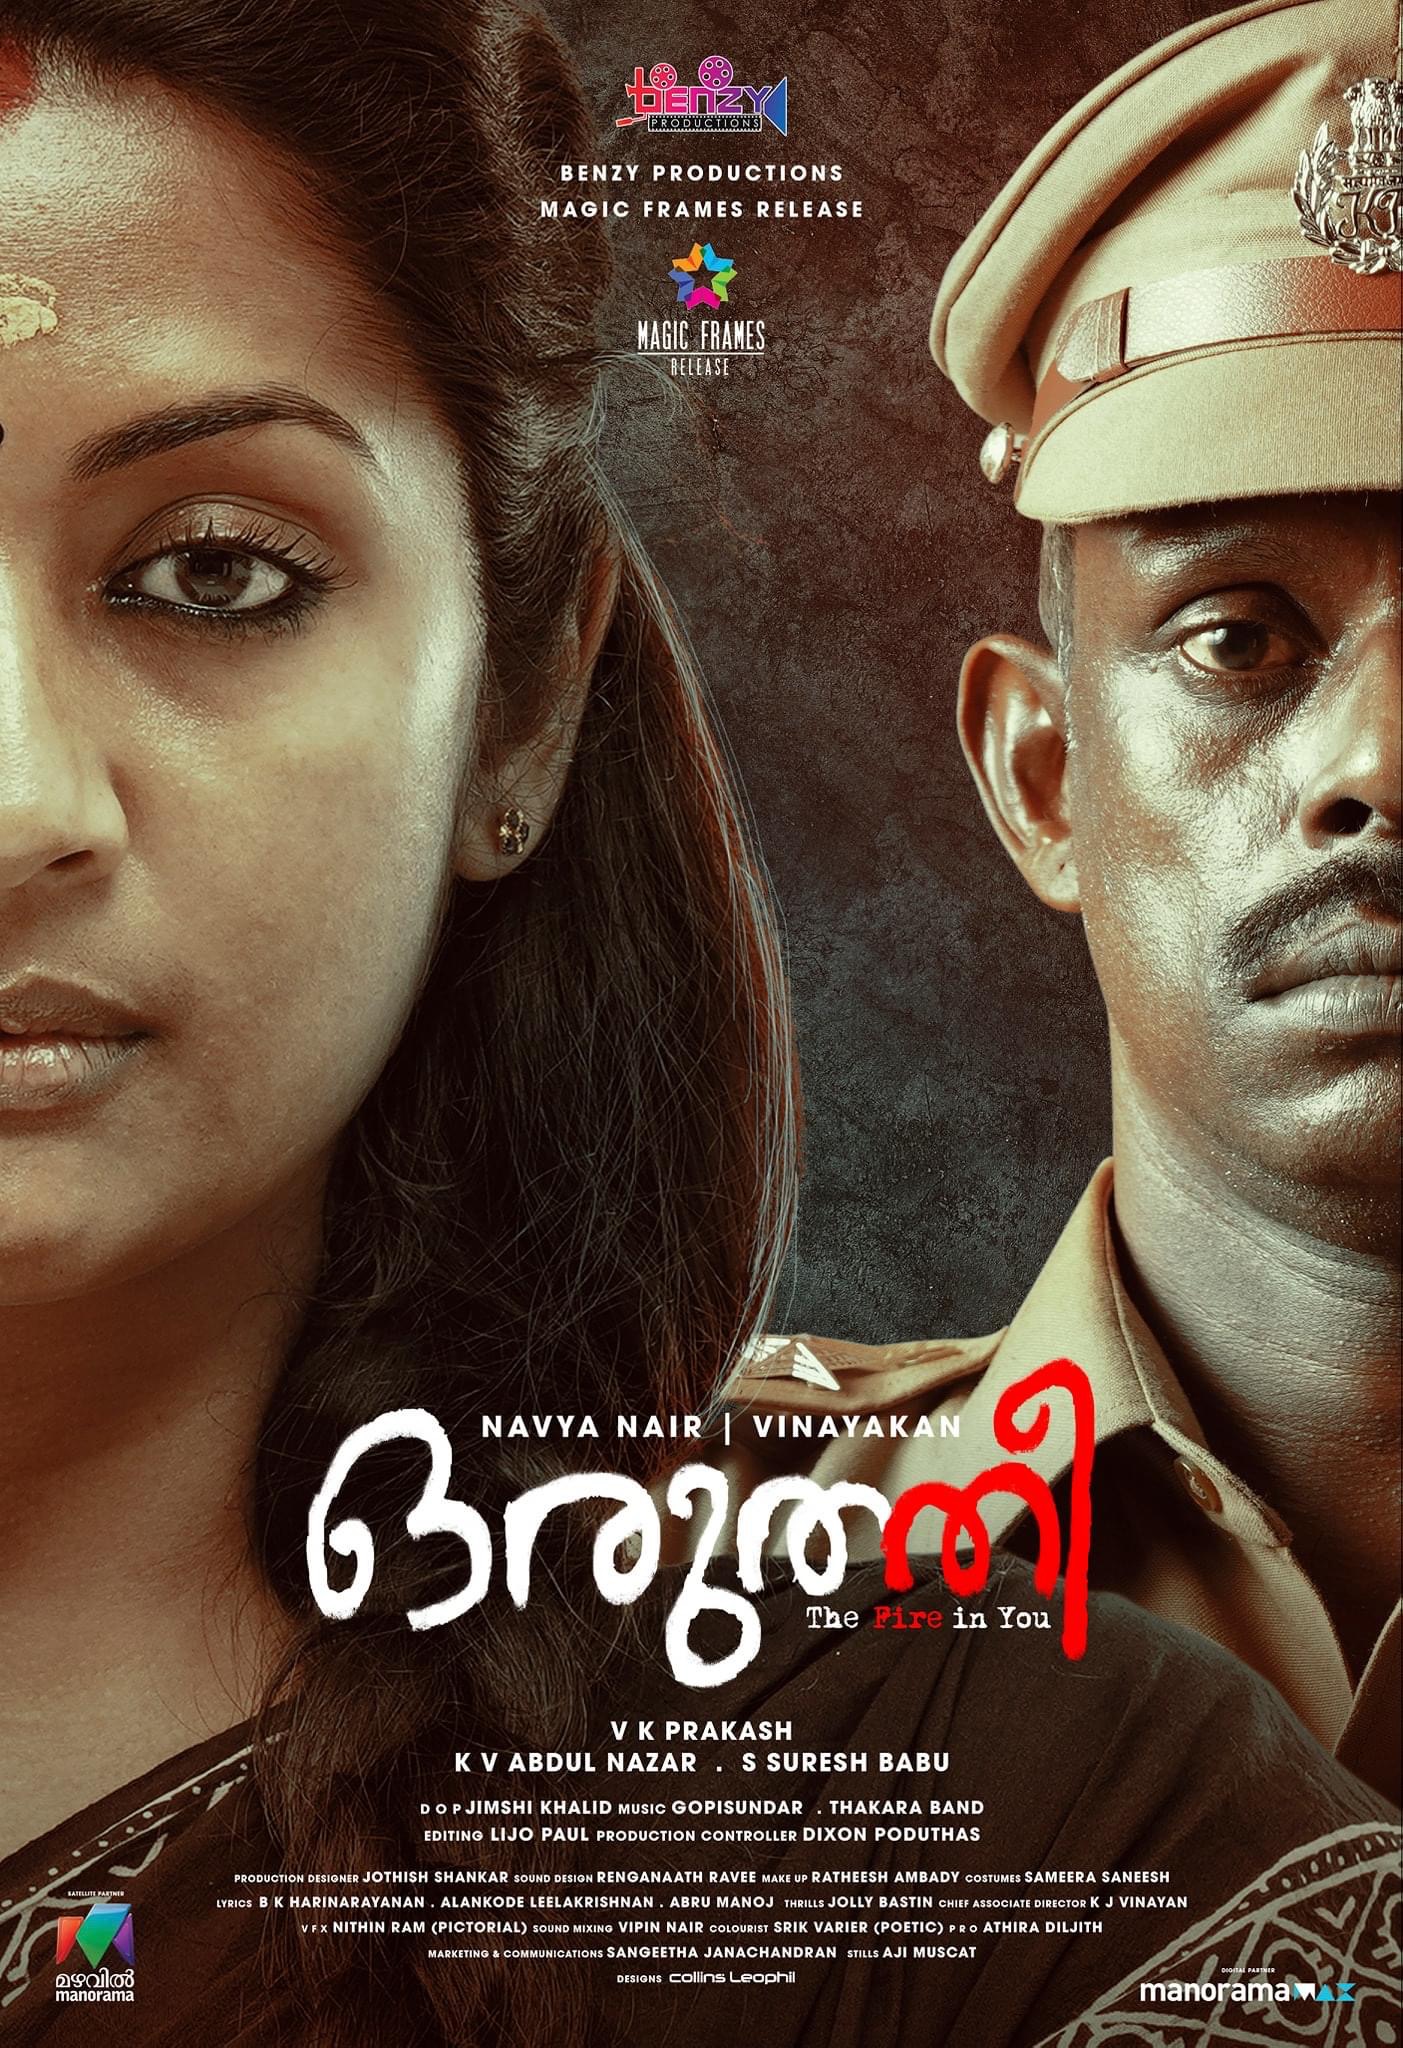 new movie reviews malayalam